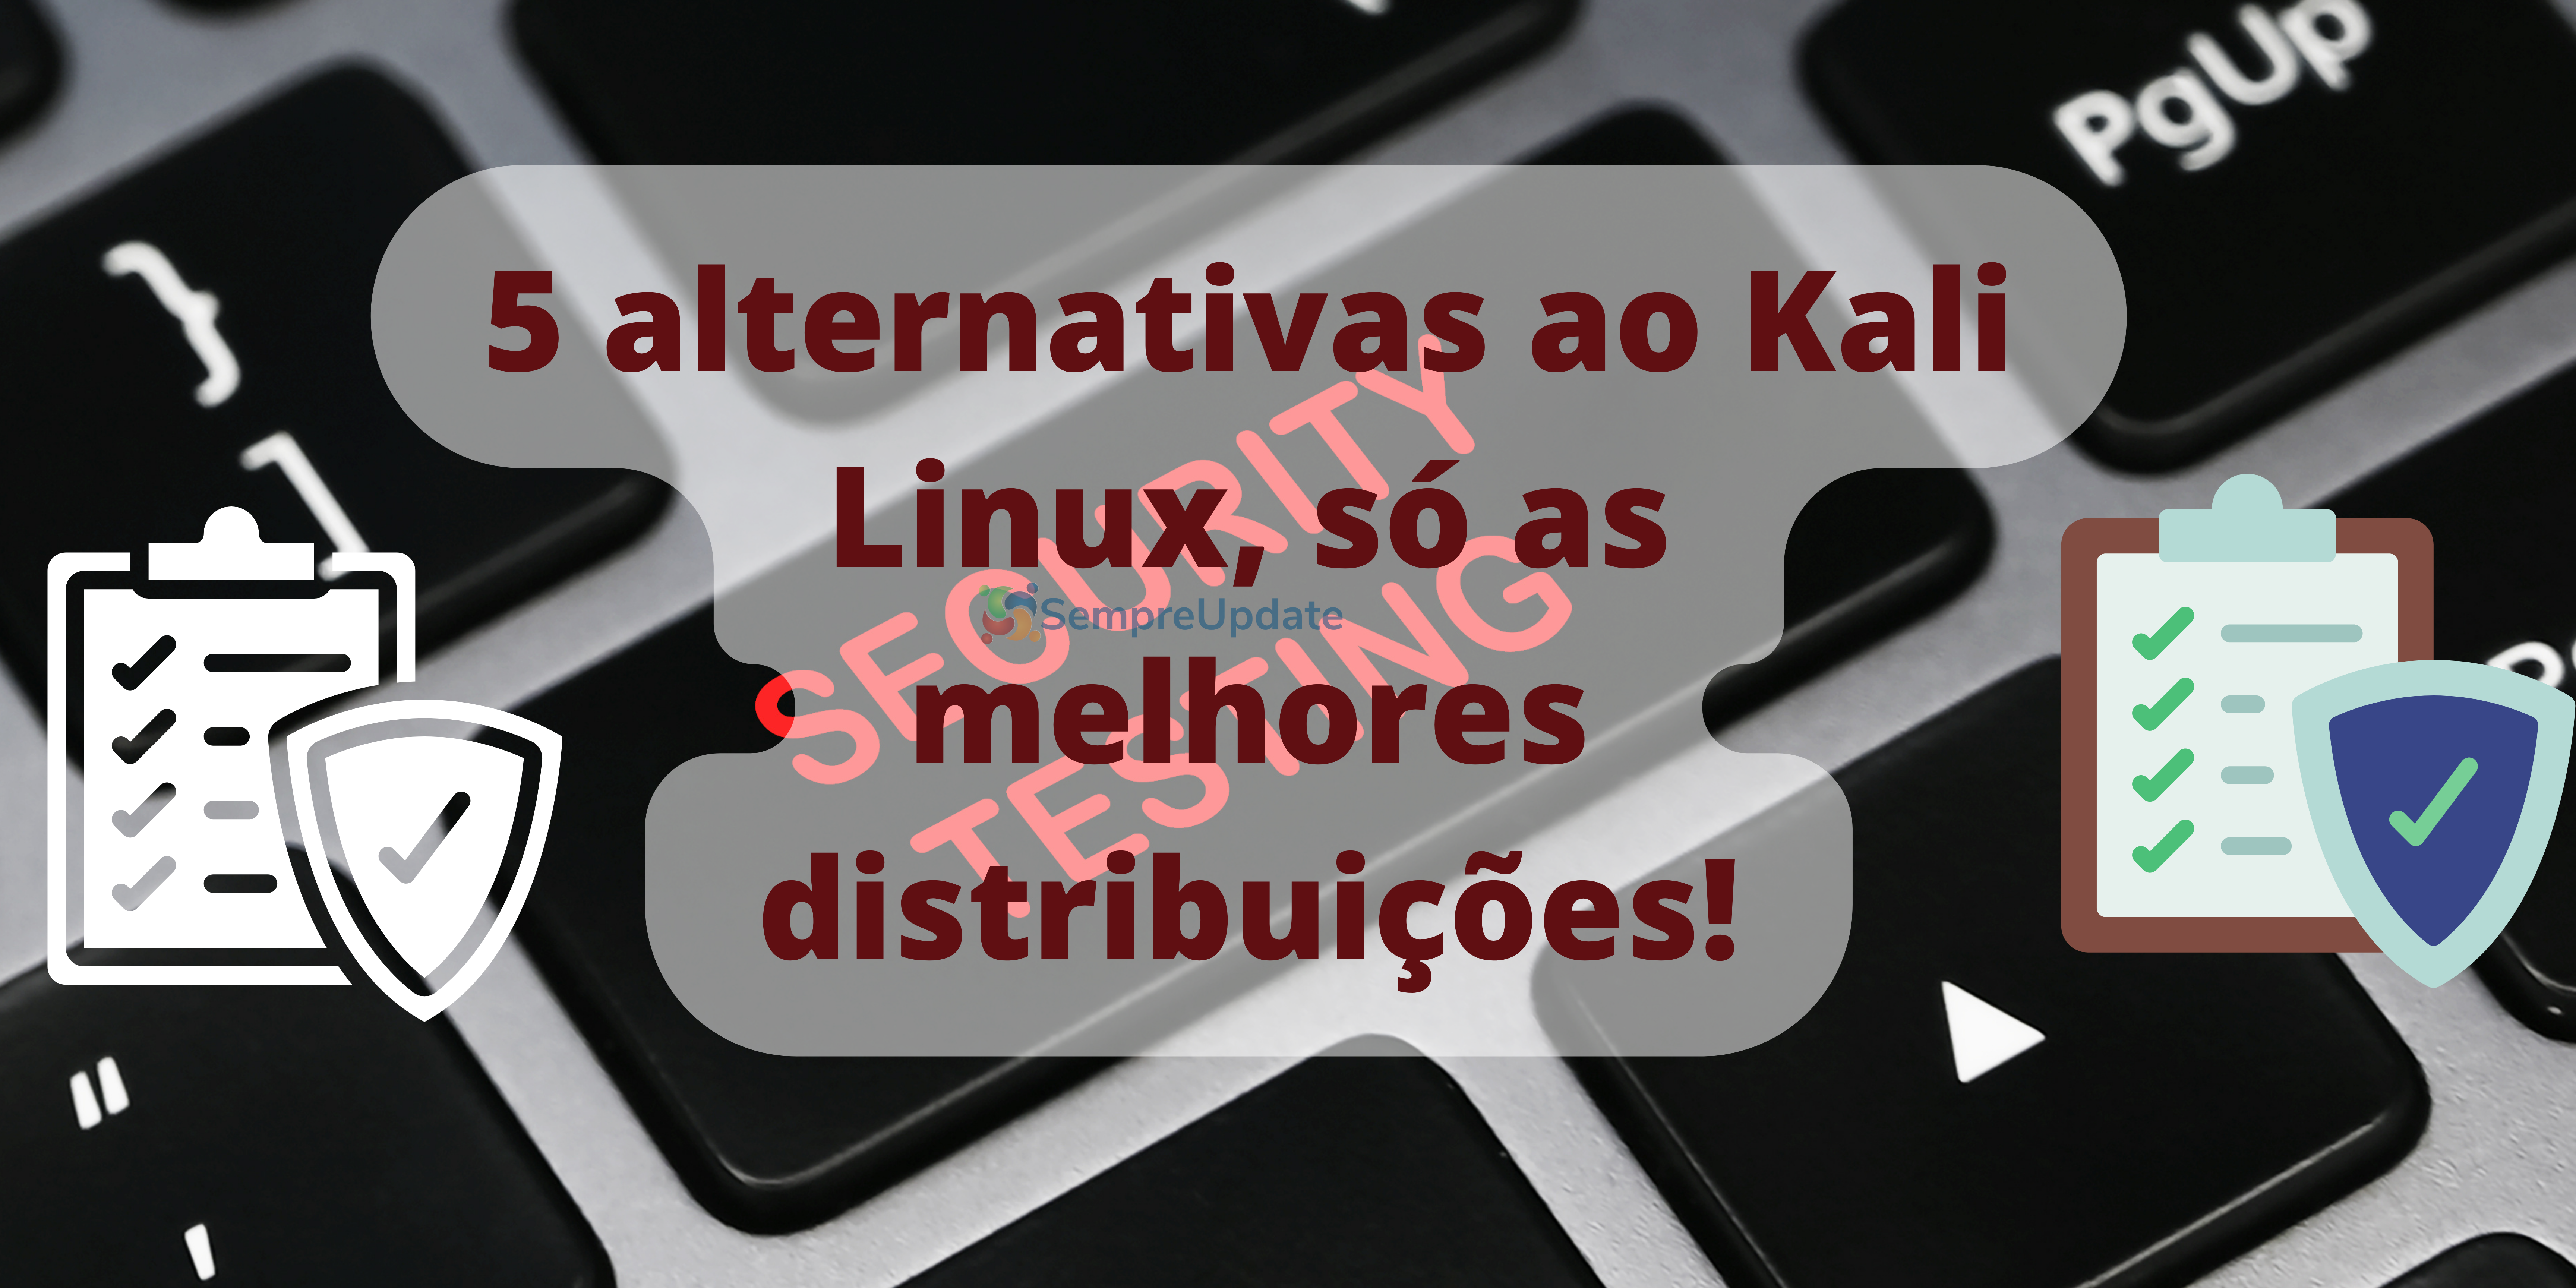 5 alternativas ao Kali Linux, só as melhores distribuições Linux!